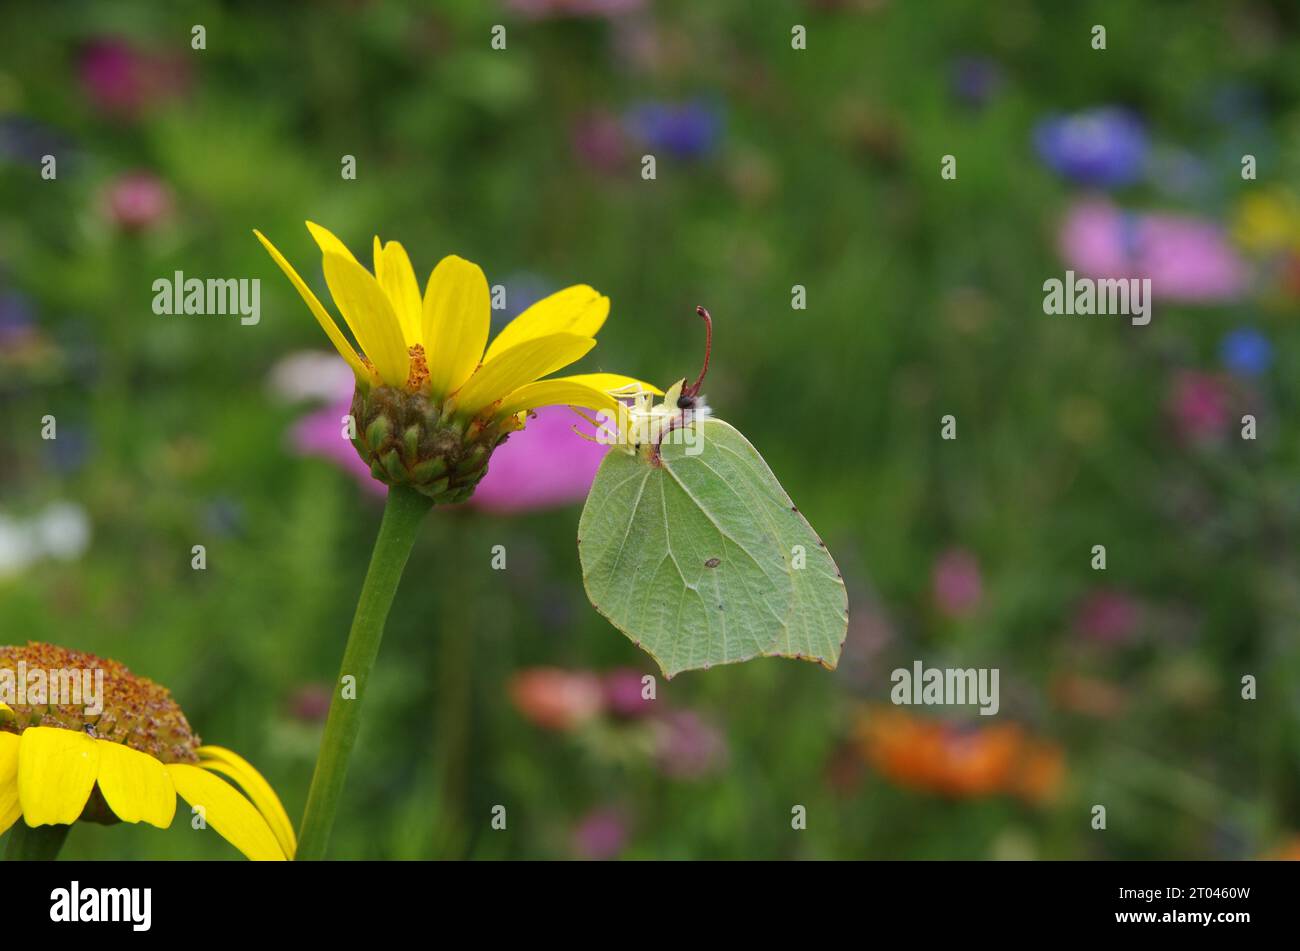 Mariposa, azufre (Gonepteryx rhamni), hembra, flor, prado de flores, colorido, primer plano, Alemania, la mariposa de limón se sienta en una flor colorida Foto de stock